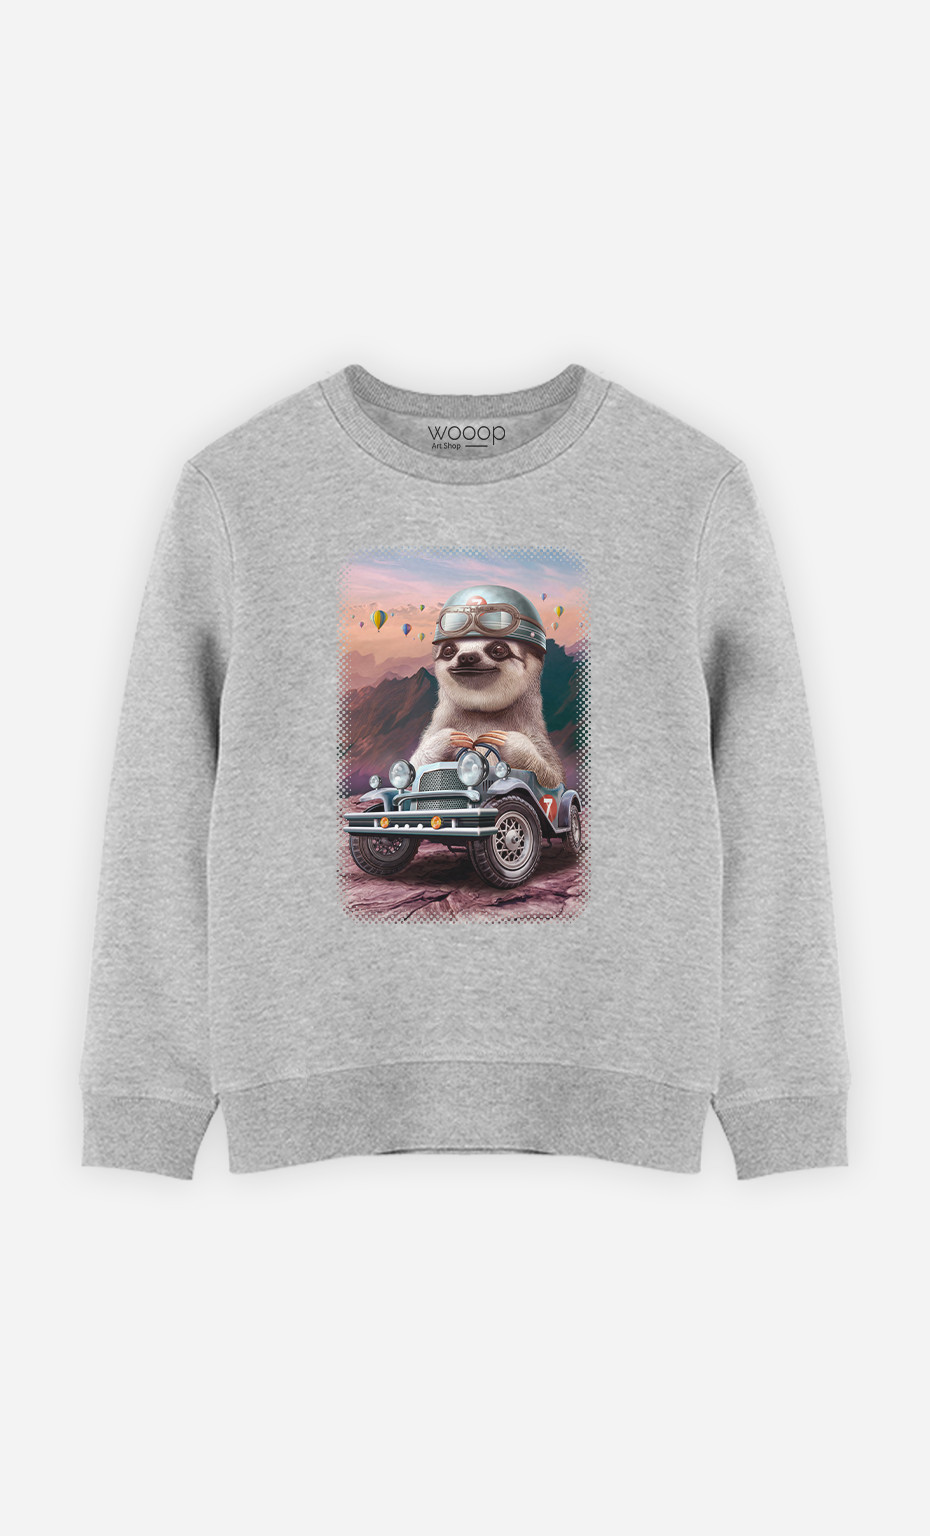 Kid Sweatshirt Sloth On Racing Car